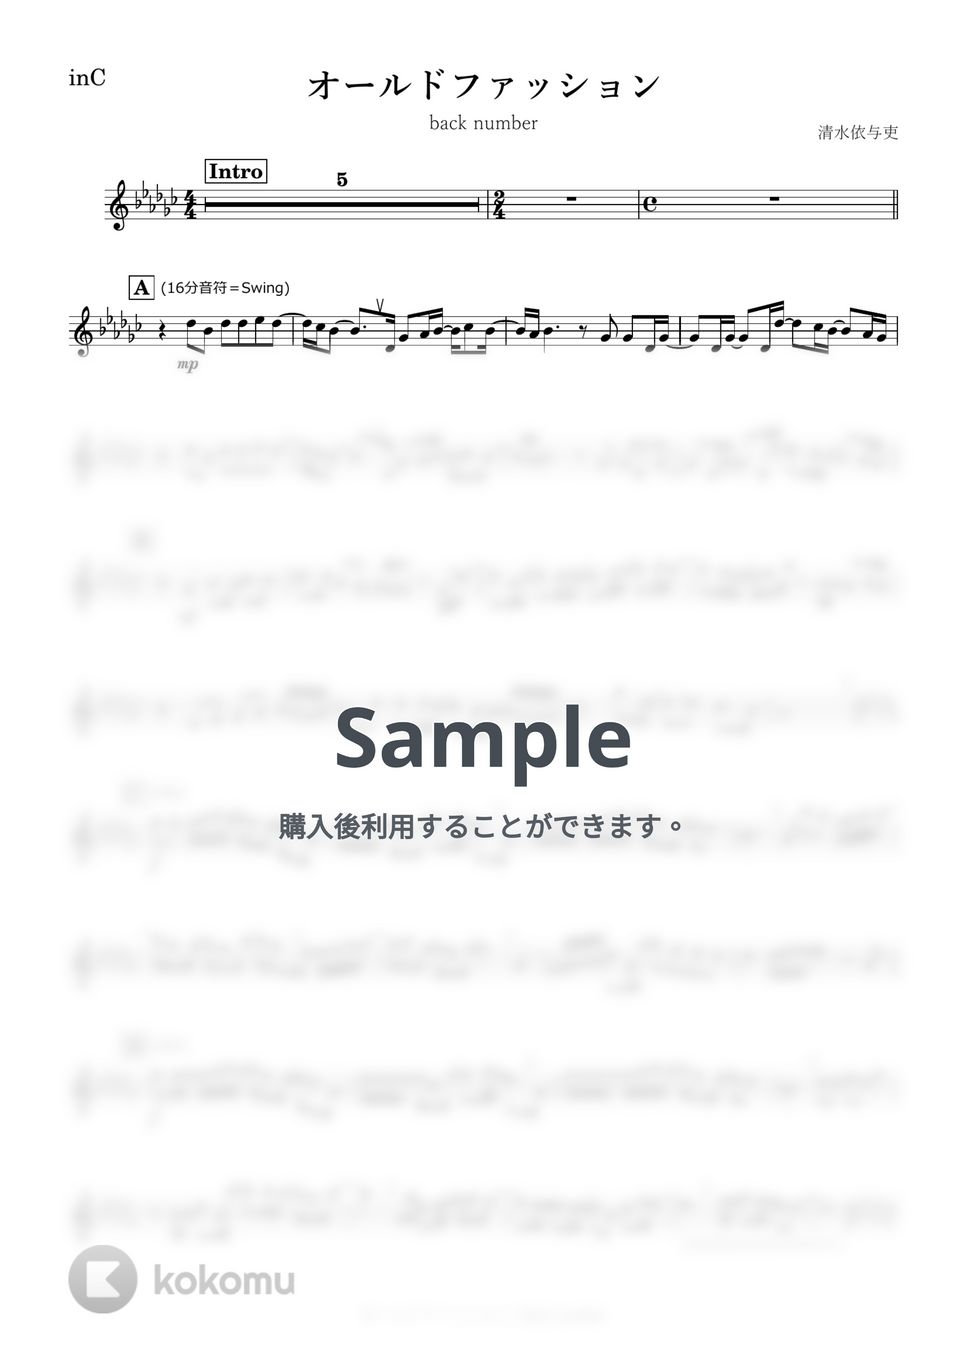 back number - オールドファッション (C) by kanamusic